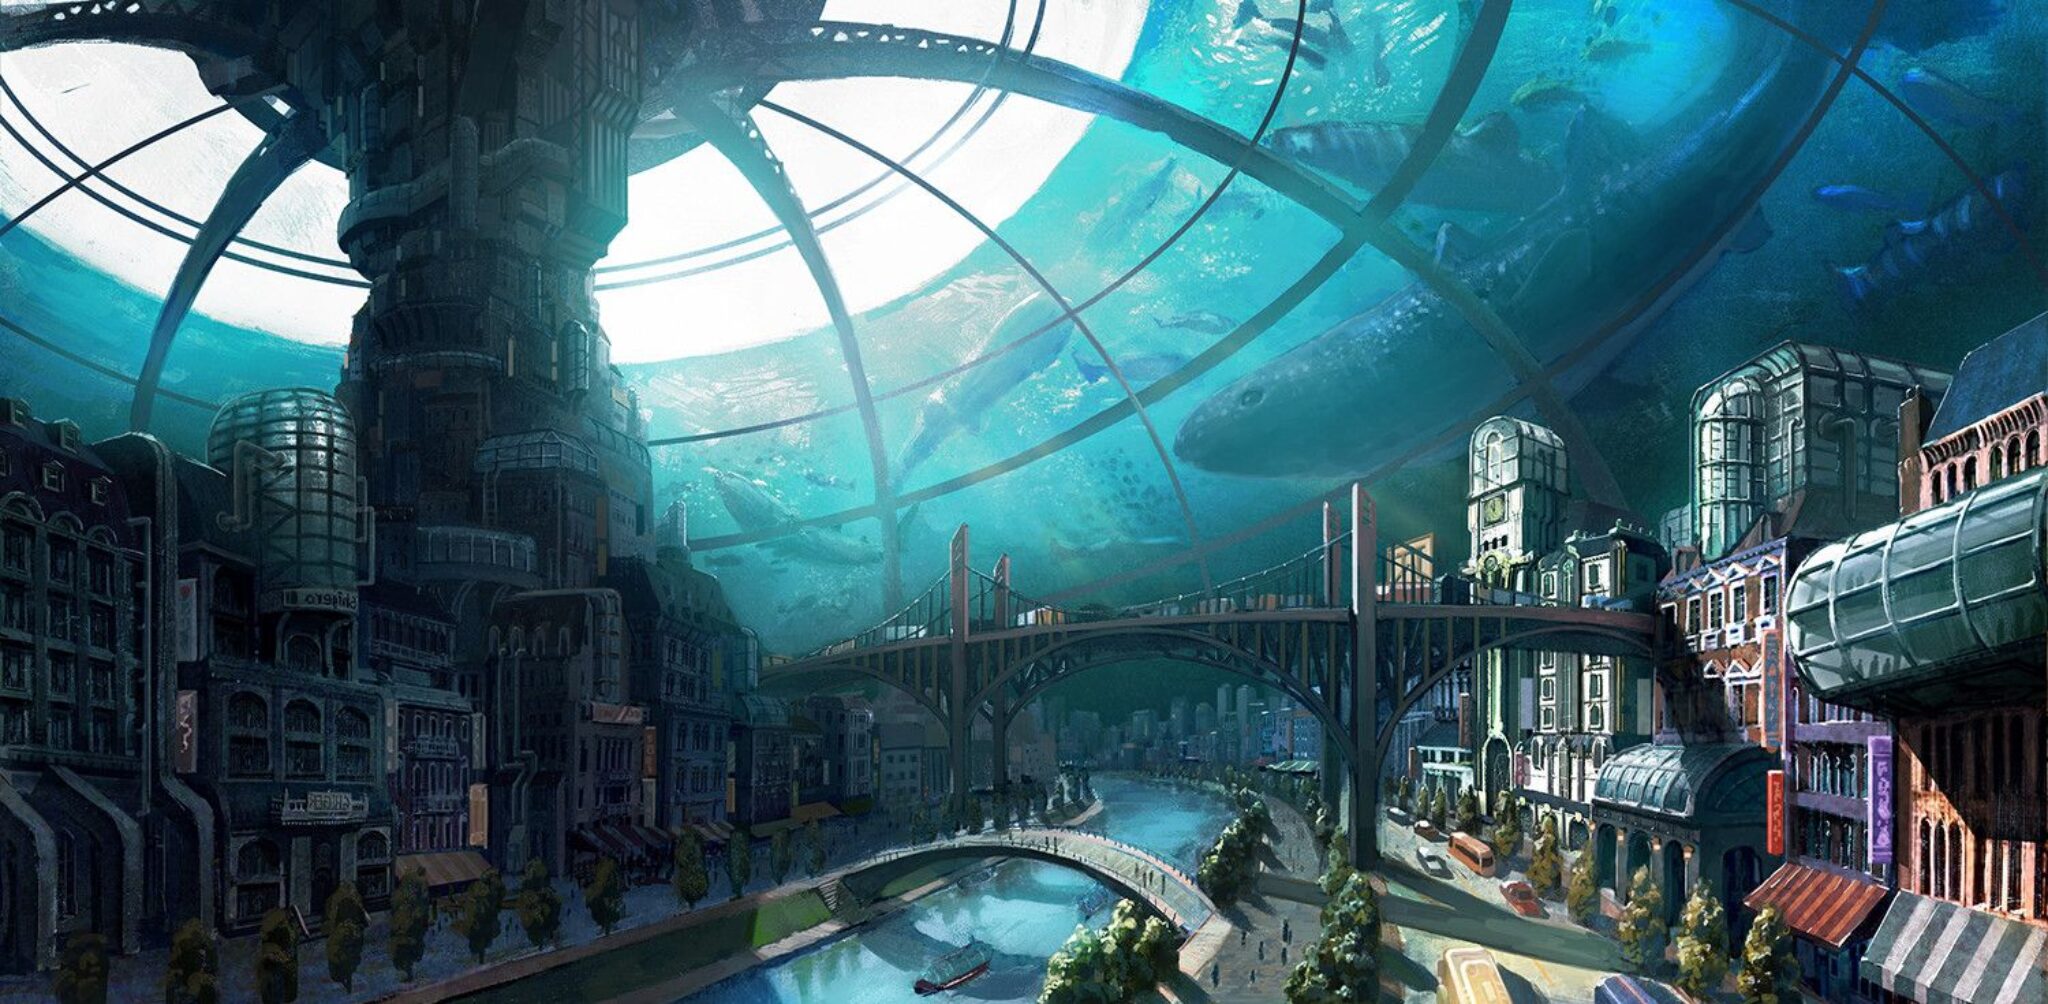 Город поды. Город купол scifi концепт Art. Гидрополис подводный город купол. Экогород будущего концепт. Биошок подводный город.